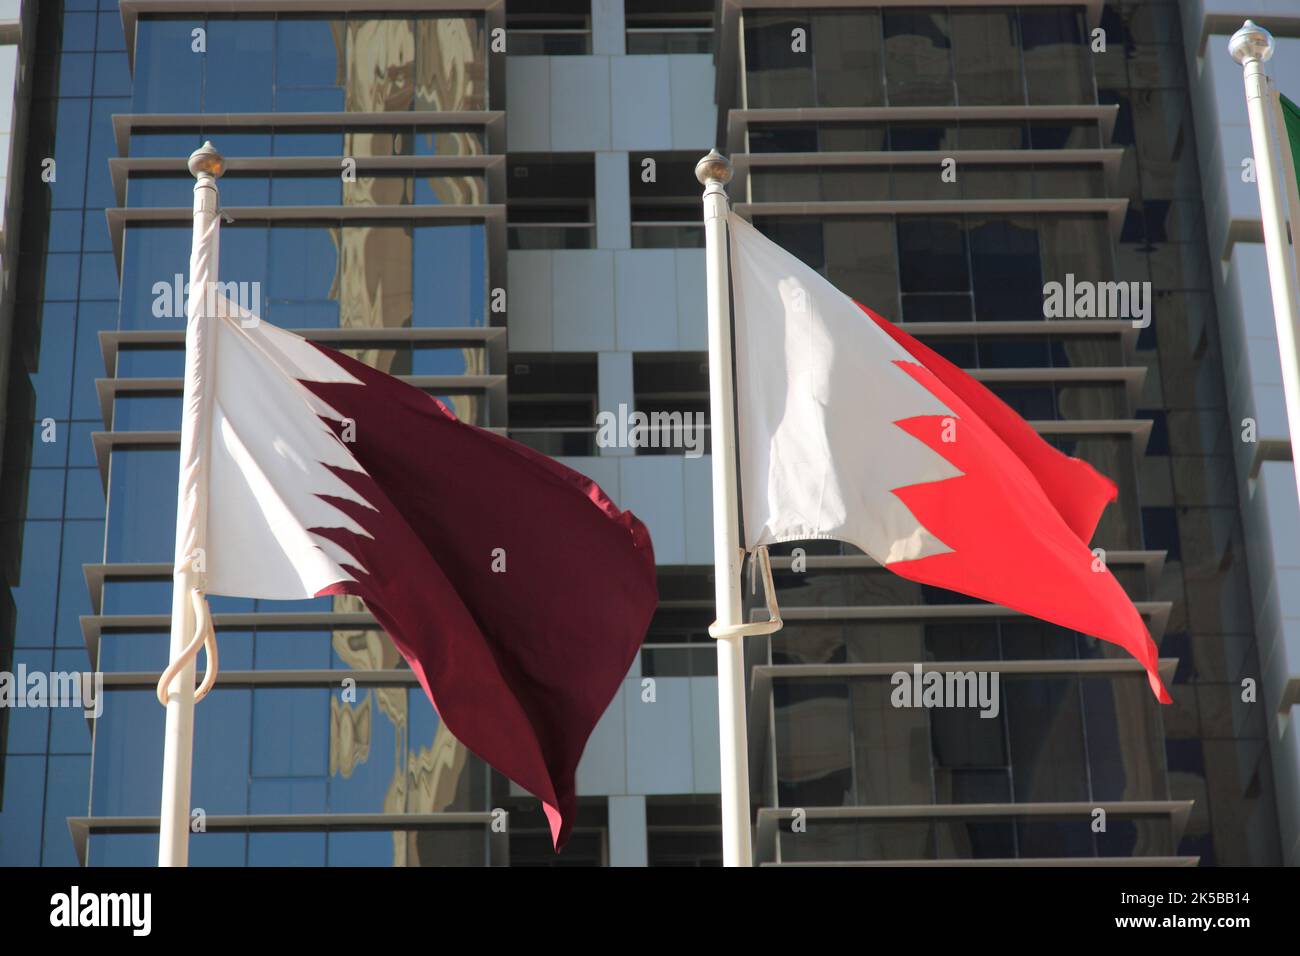 Fahnen von Katar, Qatar und Bahrein Stock Photo